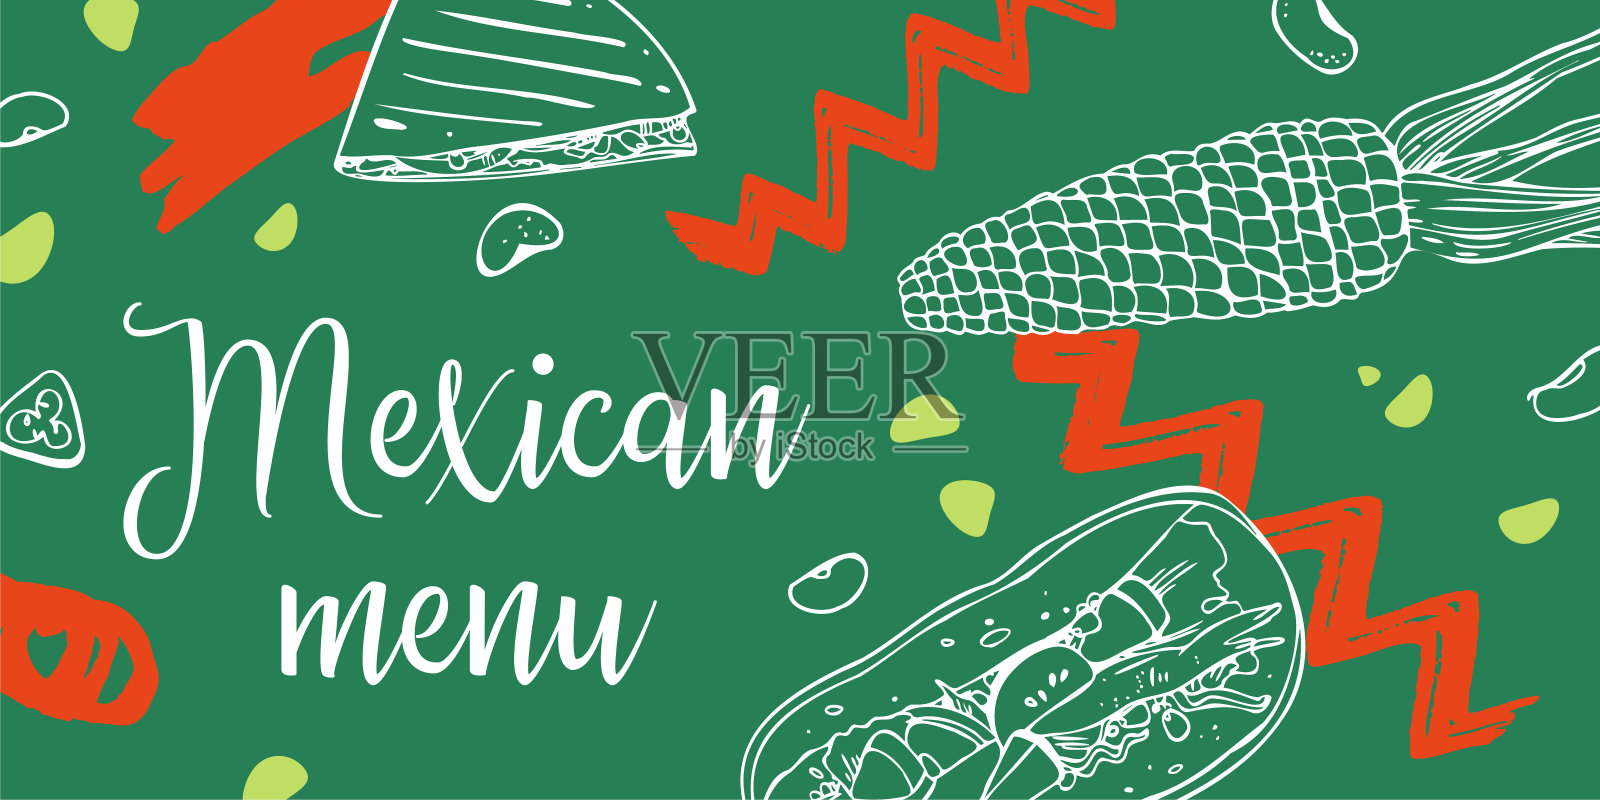 墨西哥菜单印刷设计模板。墨西哥薄饼，玉米卷和蔬菜。手绘轮廓矢量草图插图设计模板素材